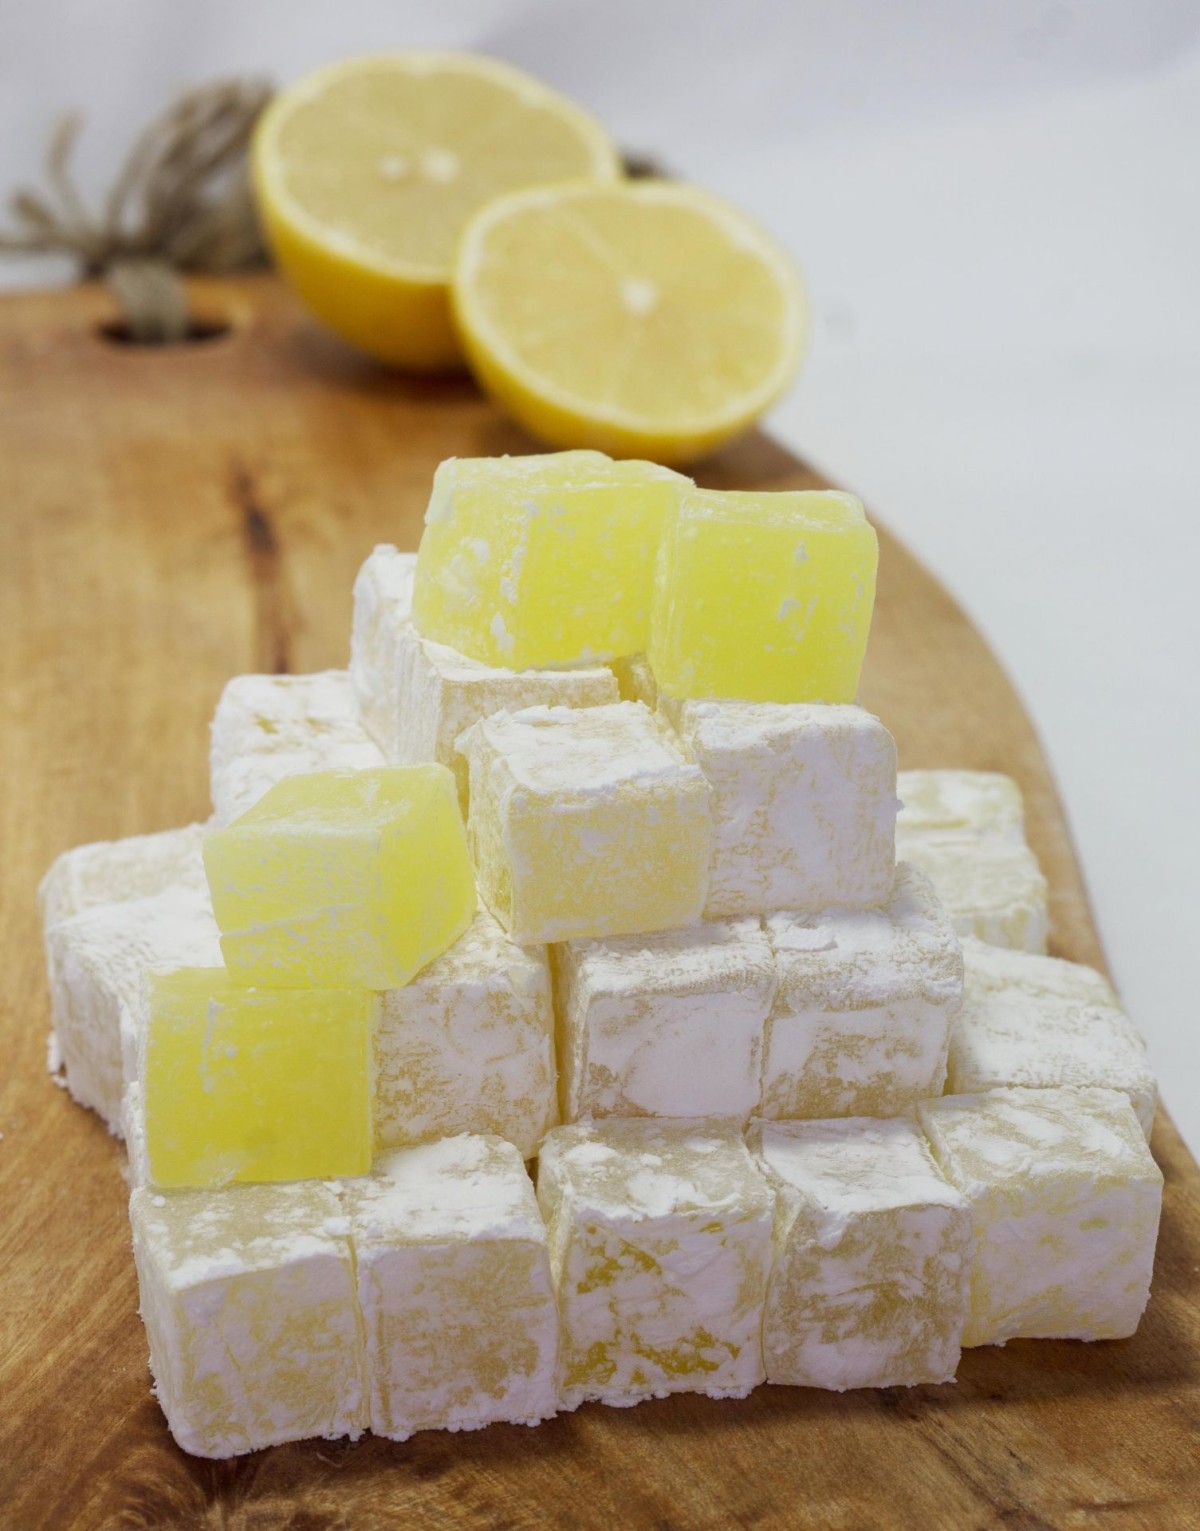 Limonlu lokum nasıl yapılır? Kolay ve lezzetli tarif